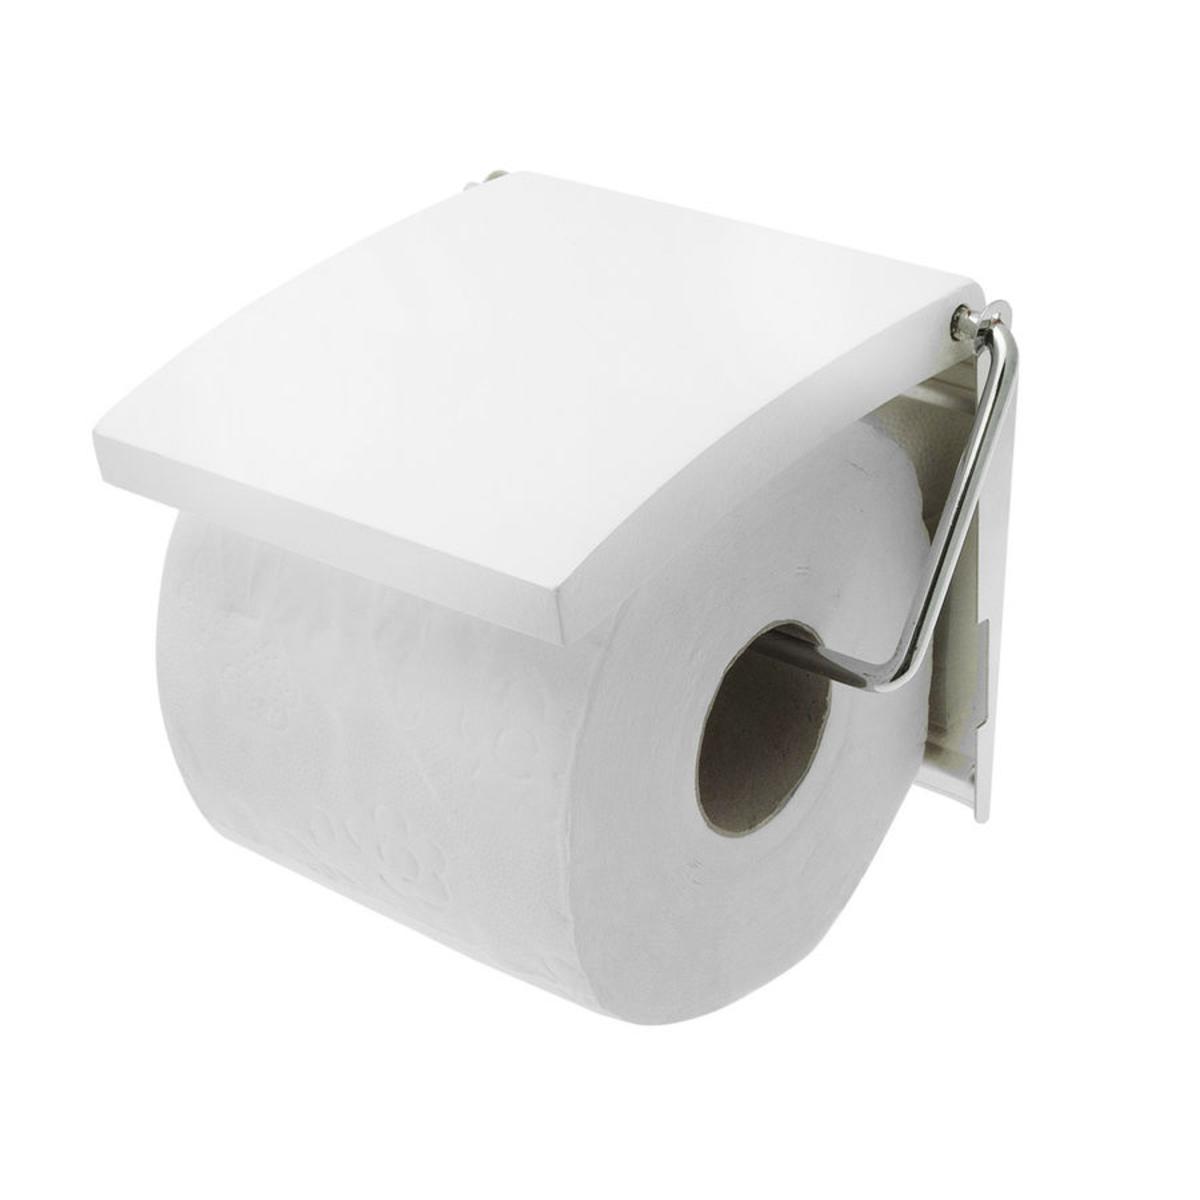 Dérouleur WC en MDF - 13,5 x 11,7 x 2,5 cm - Blanc